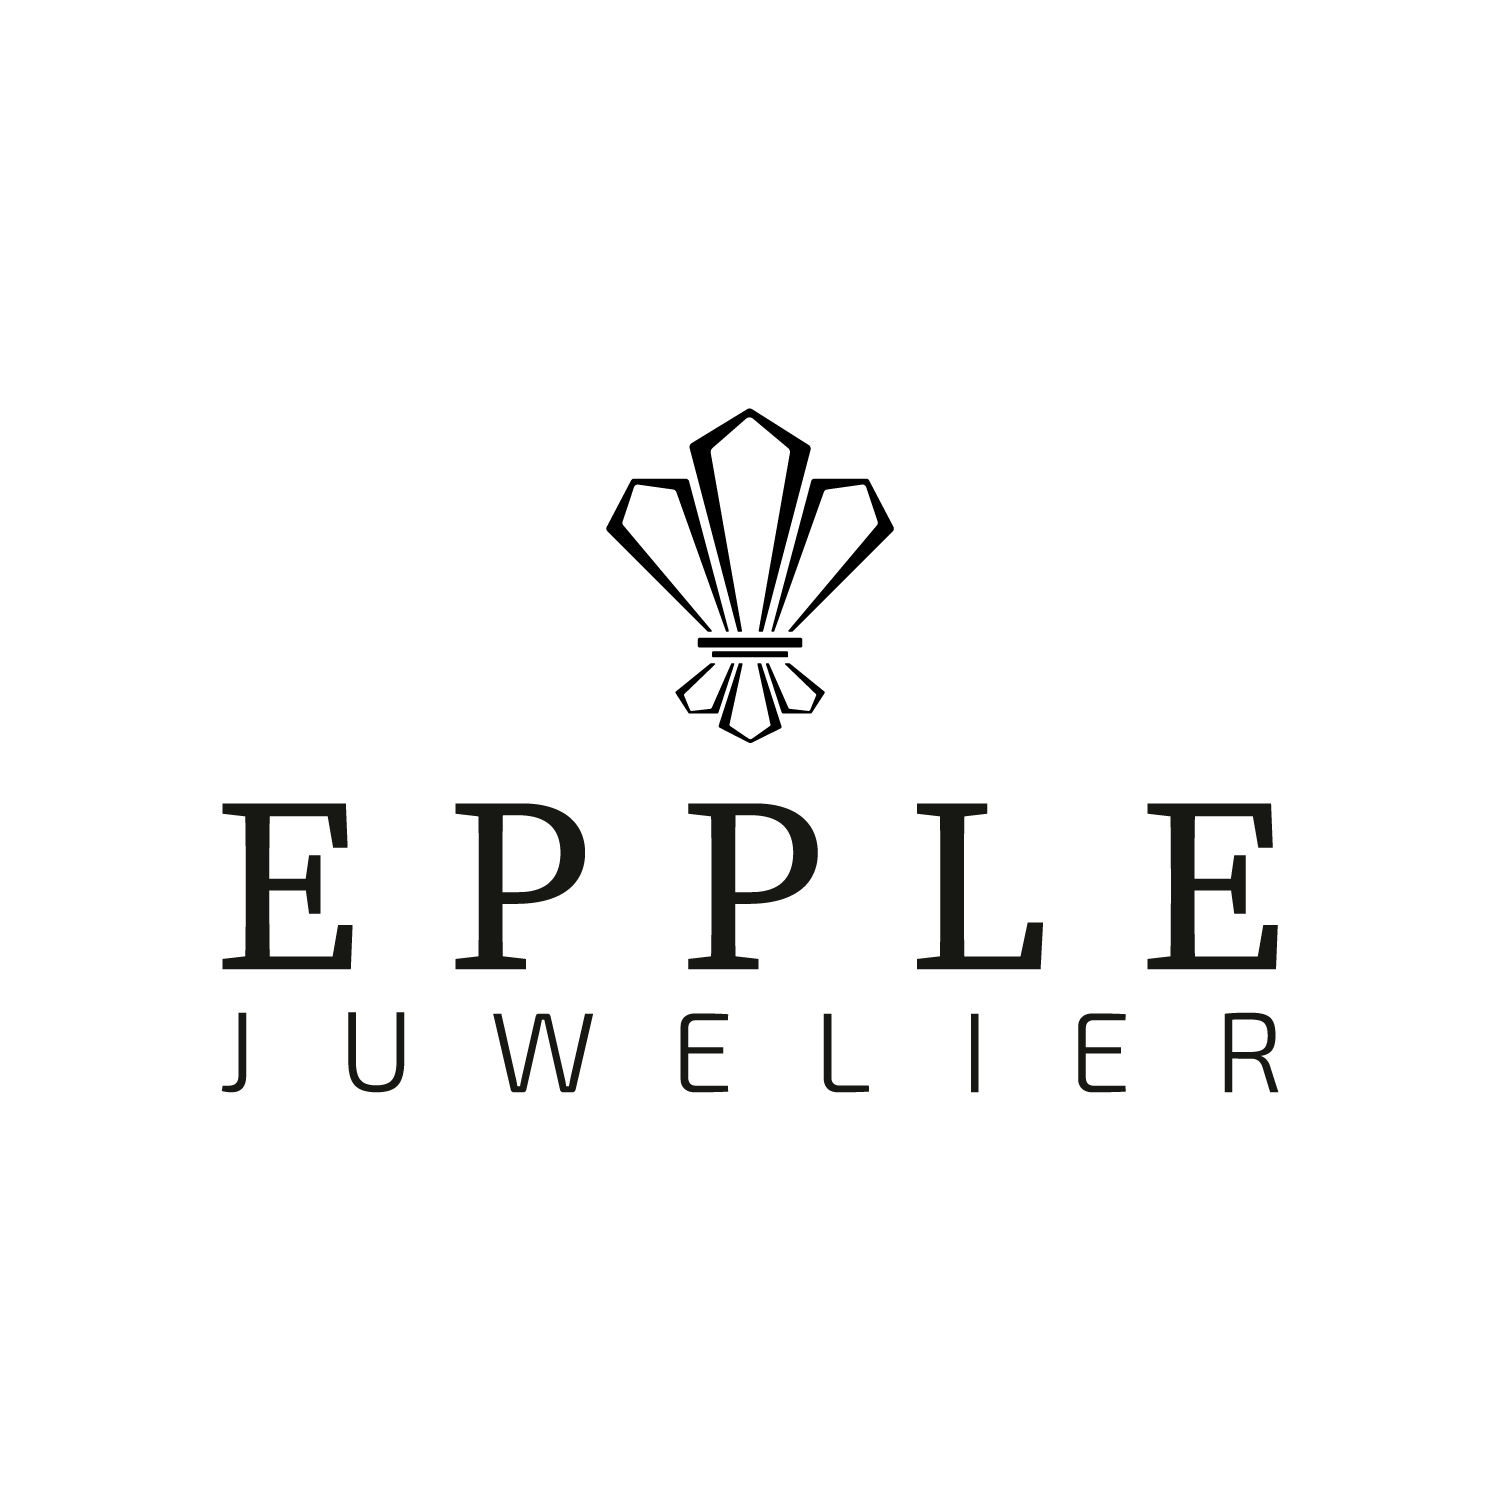 Bild zu Juweliere Epple - Offizieller Rolex Fachhändler in Wiesbaden